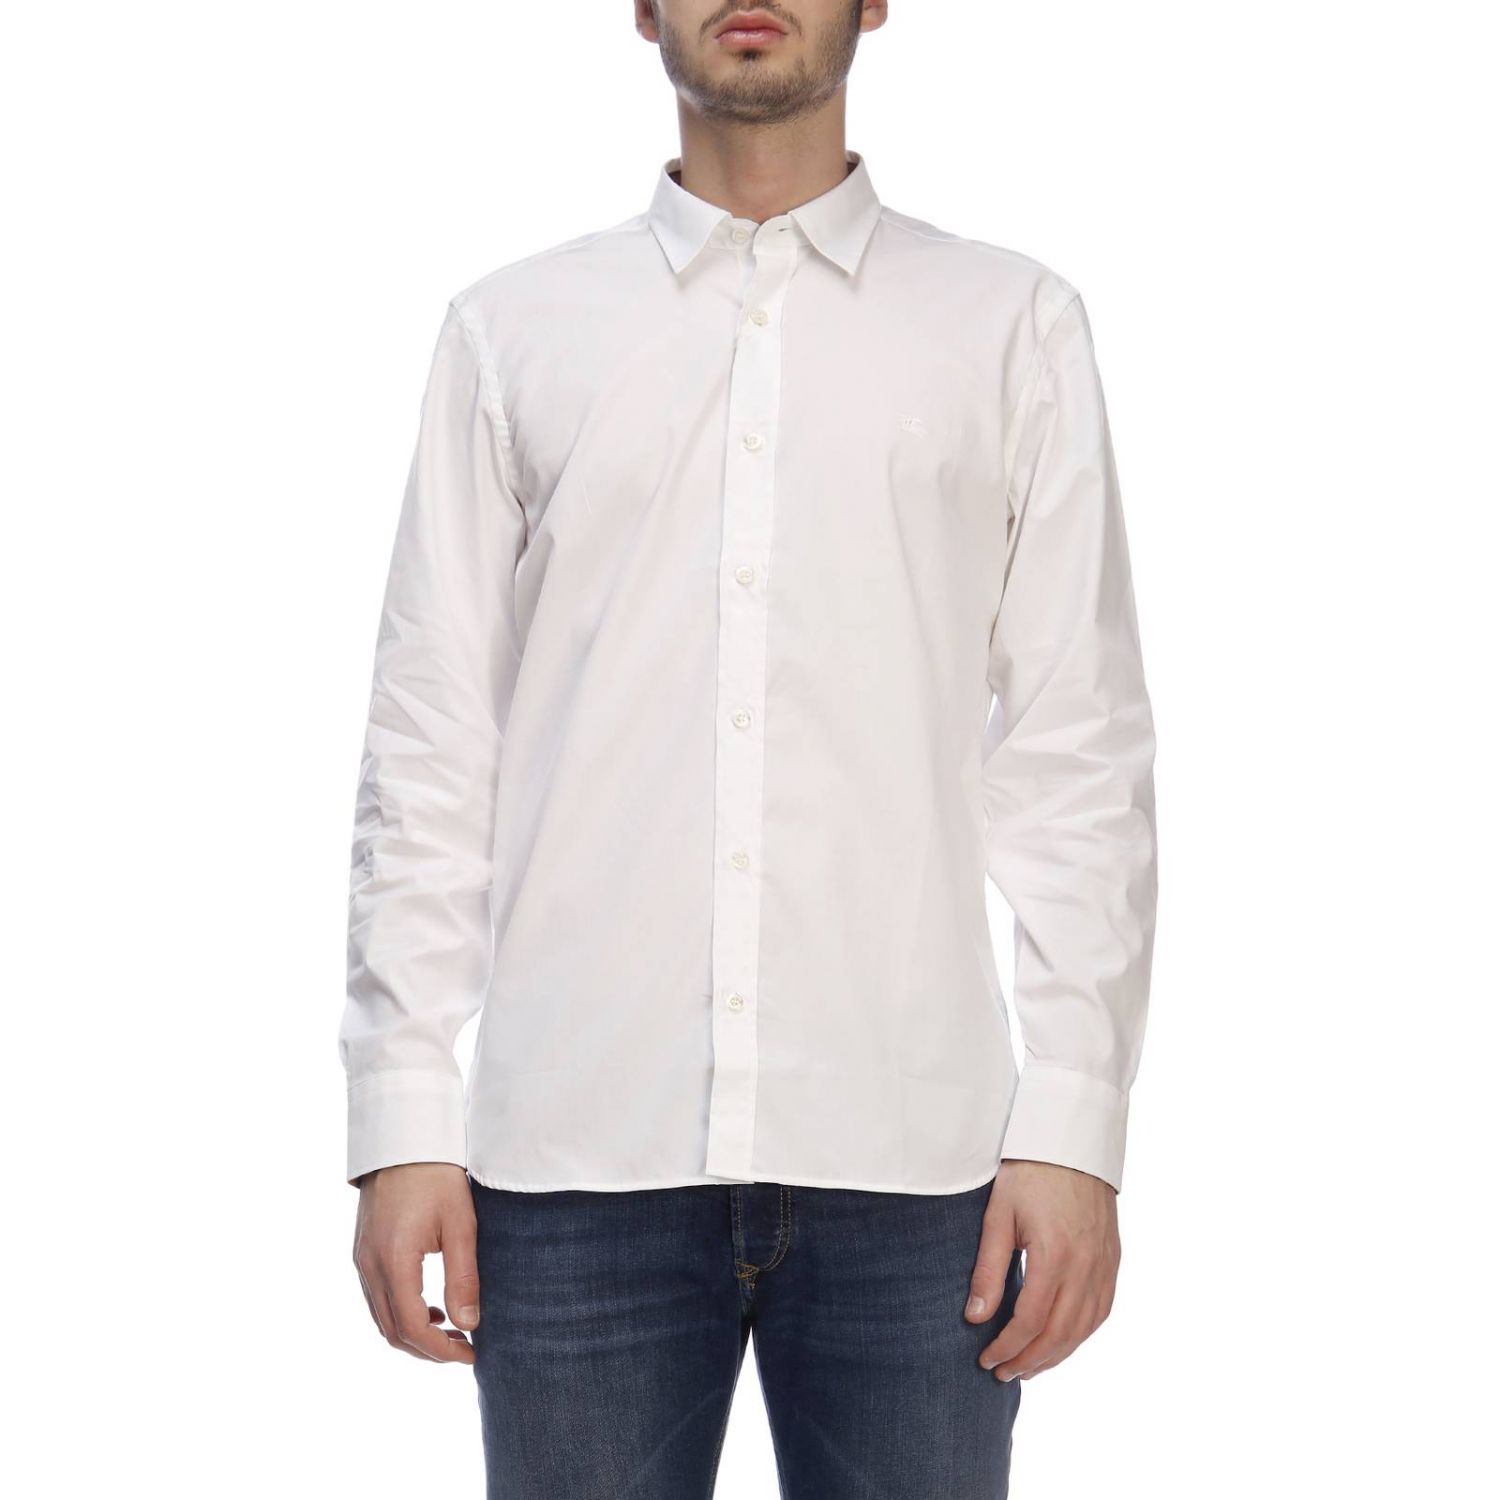 burberry white shirt mens